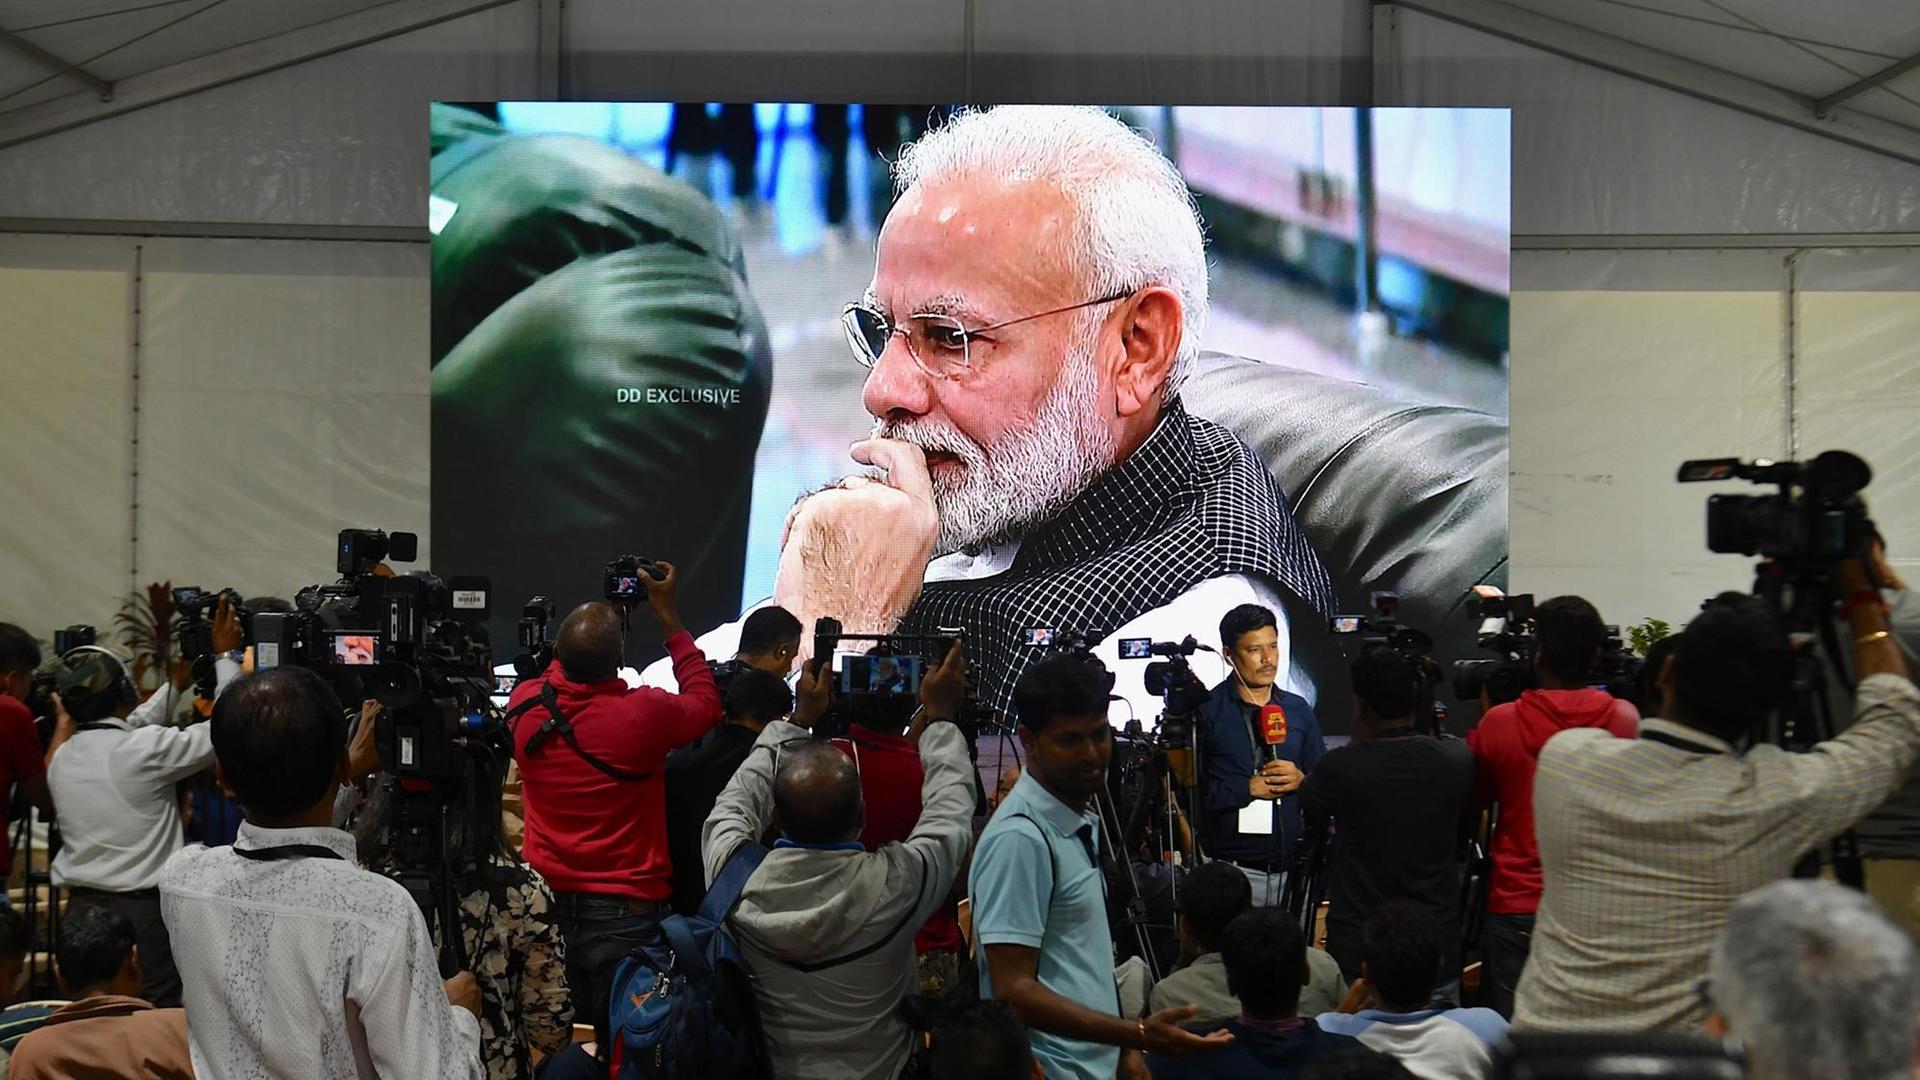 Indiens Premierminister Modi, zu sehen auf einer Leinwand, die in einem Zelt aufgestellt wurde. Davor Medienvertreter, welche die Landung der Mondsonde "Vikram" verfolgten.